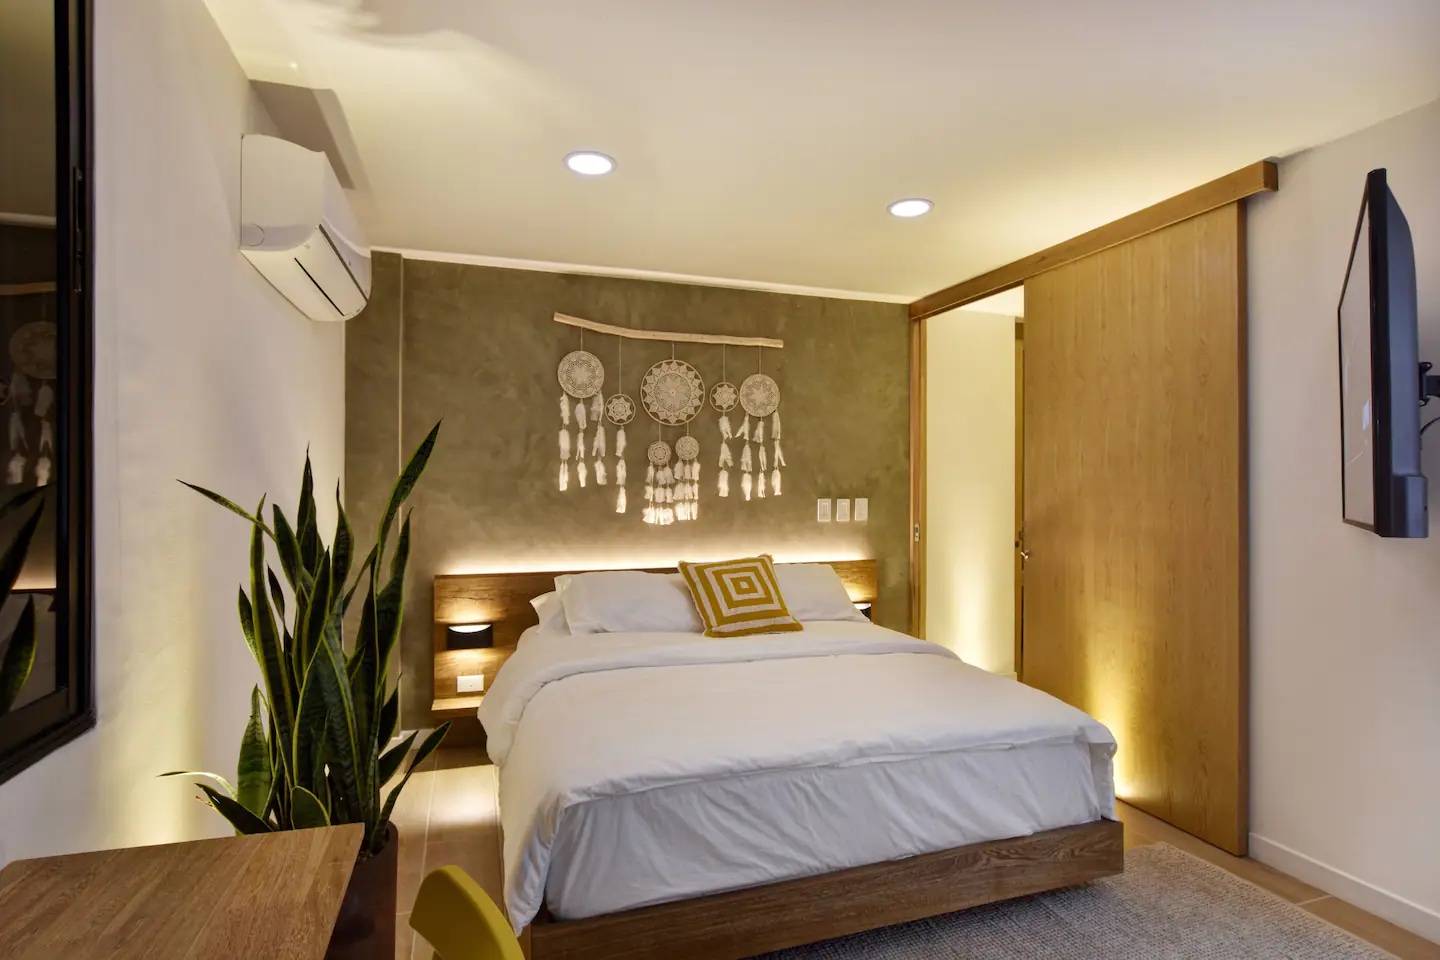 Modern bedroom decor with backlit headboard using LED strip lights